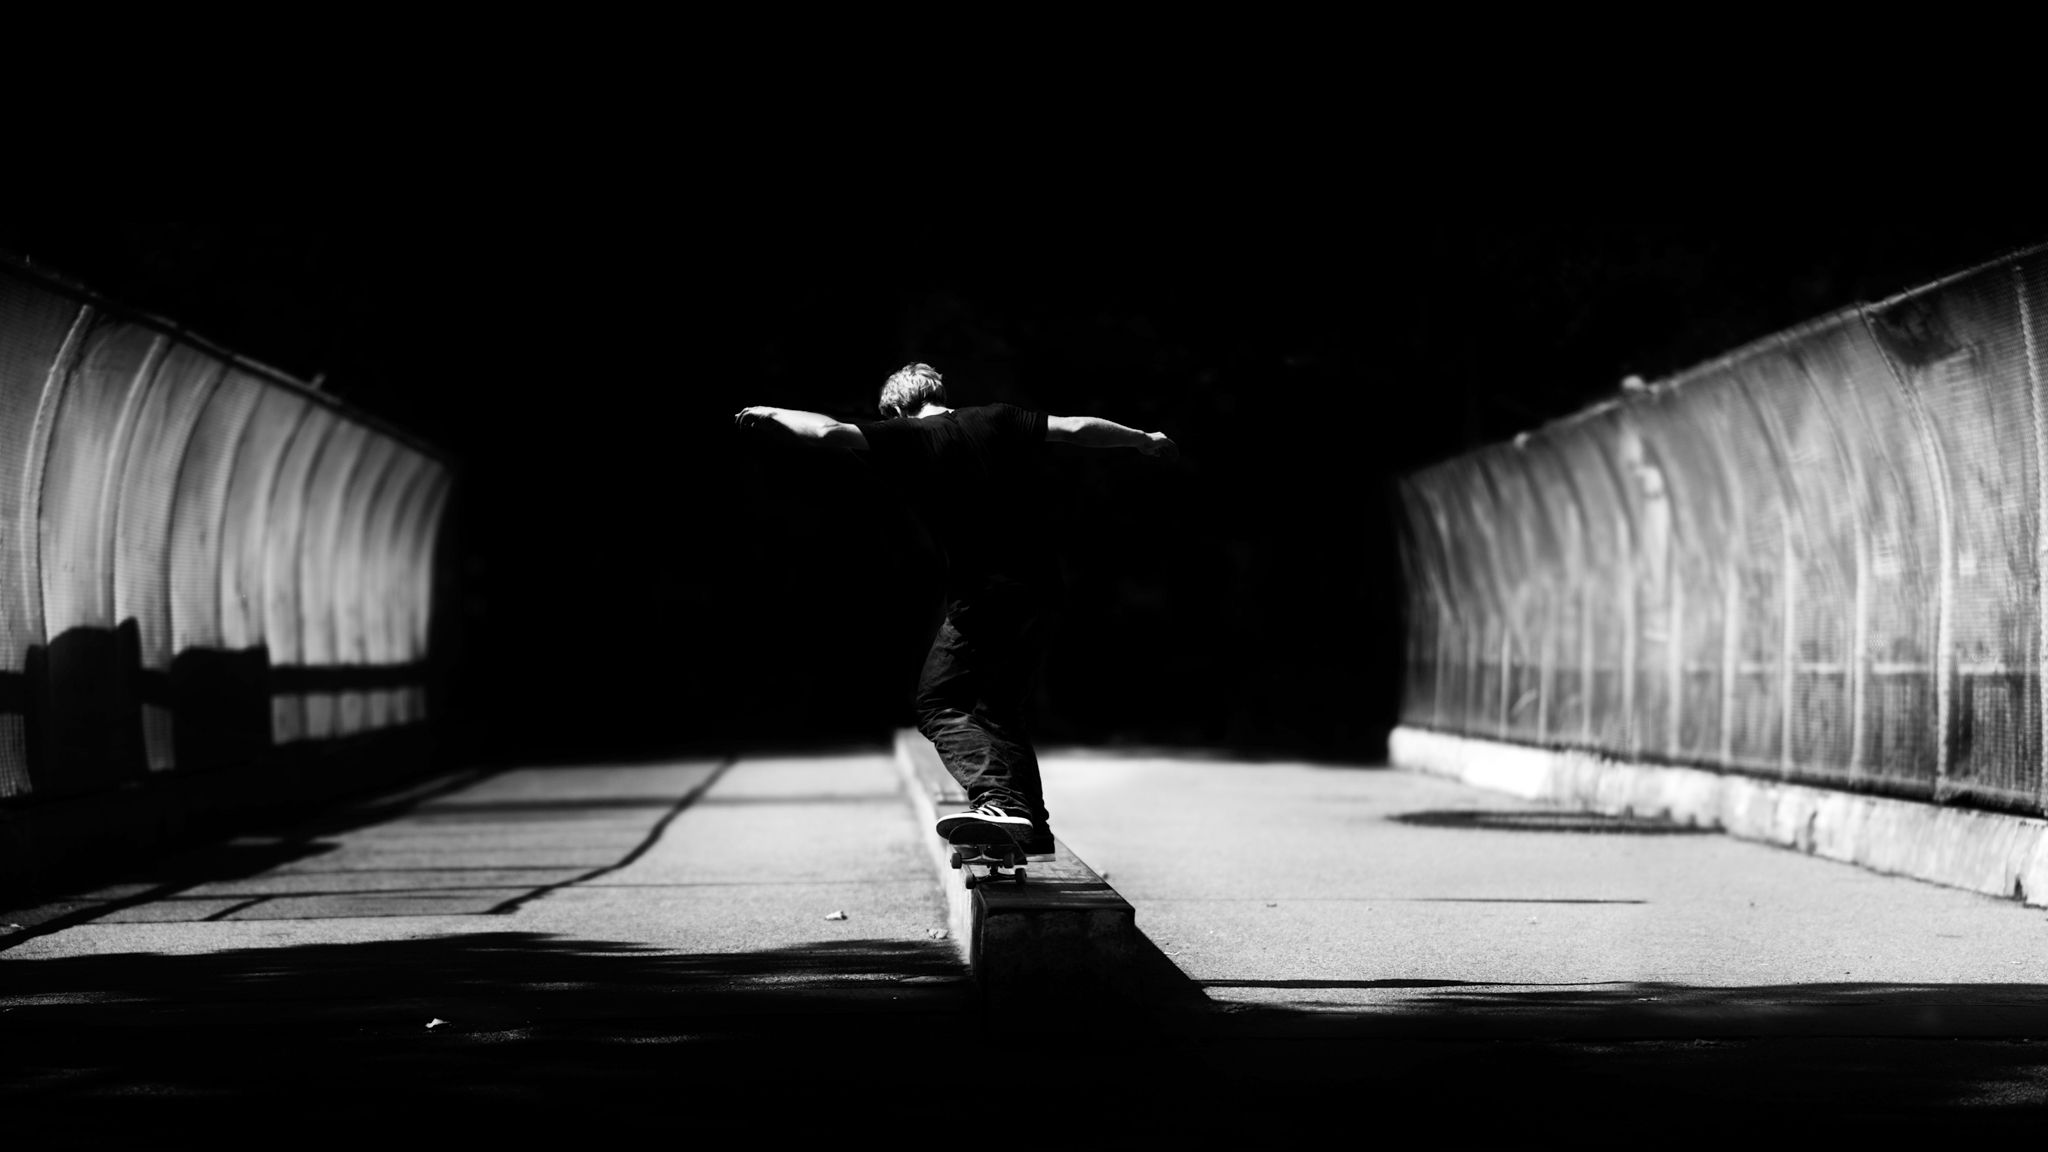 Hd Skateboarding Wallpaper Free And White Skate